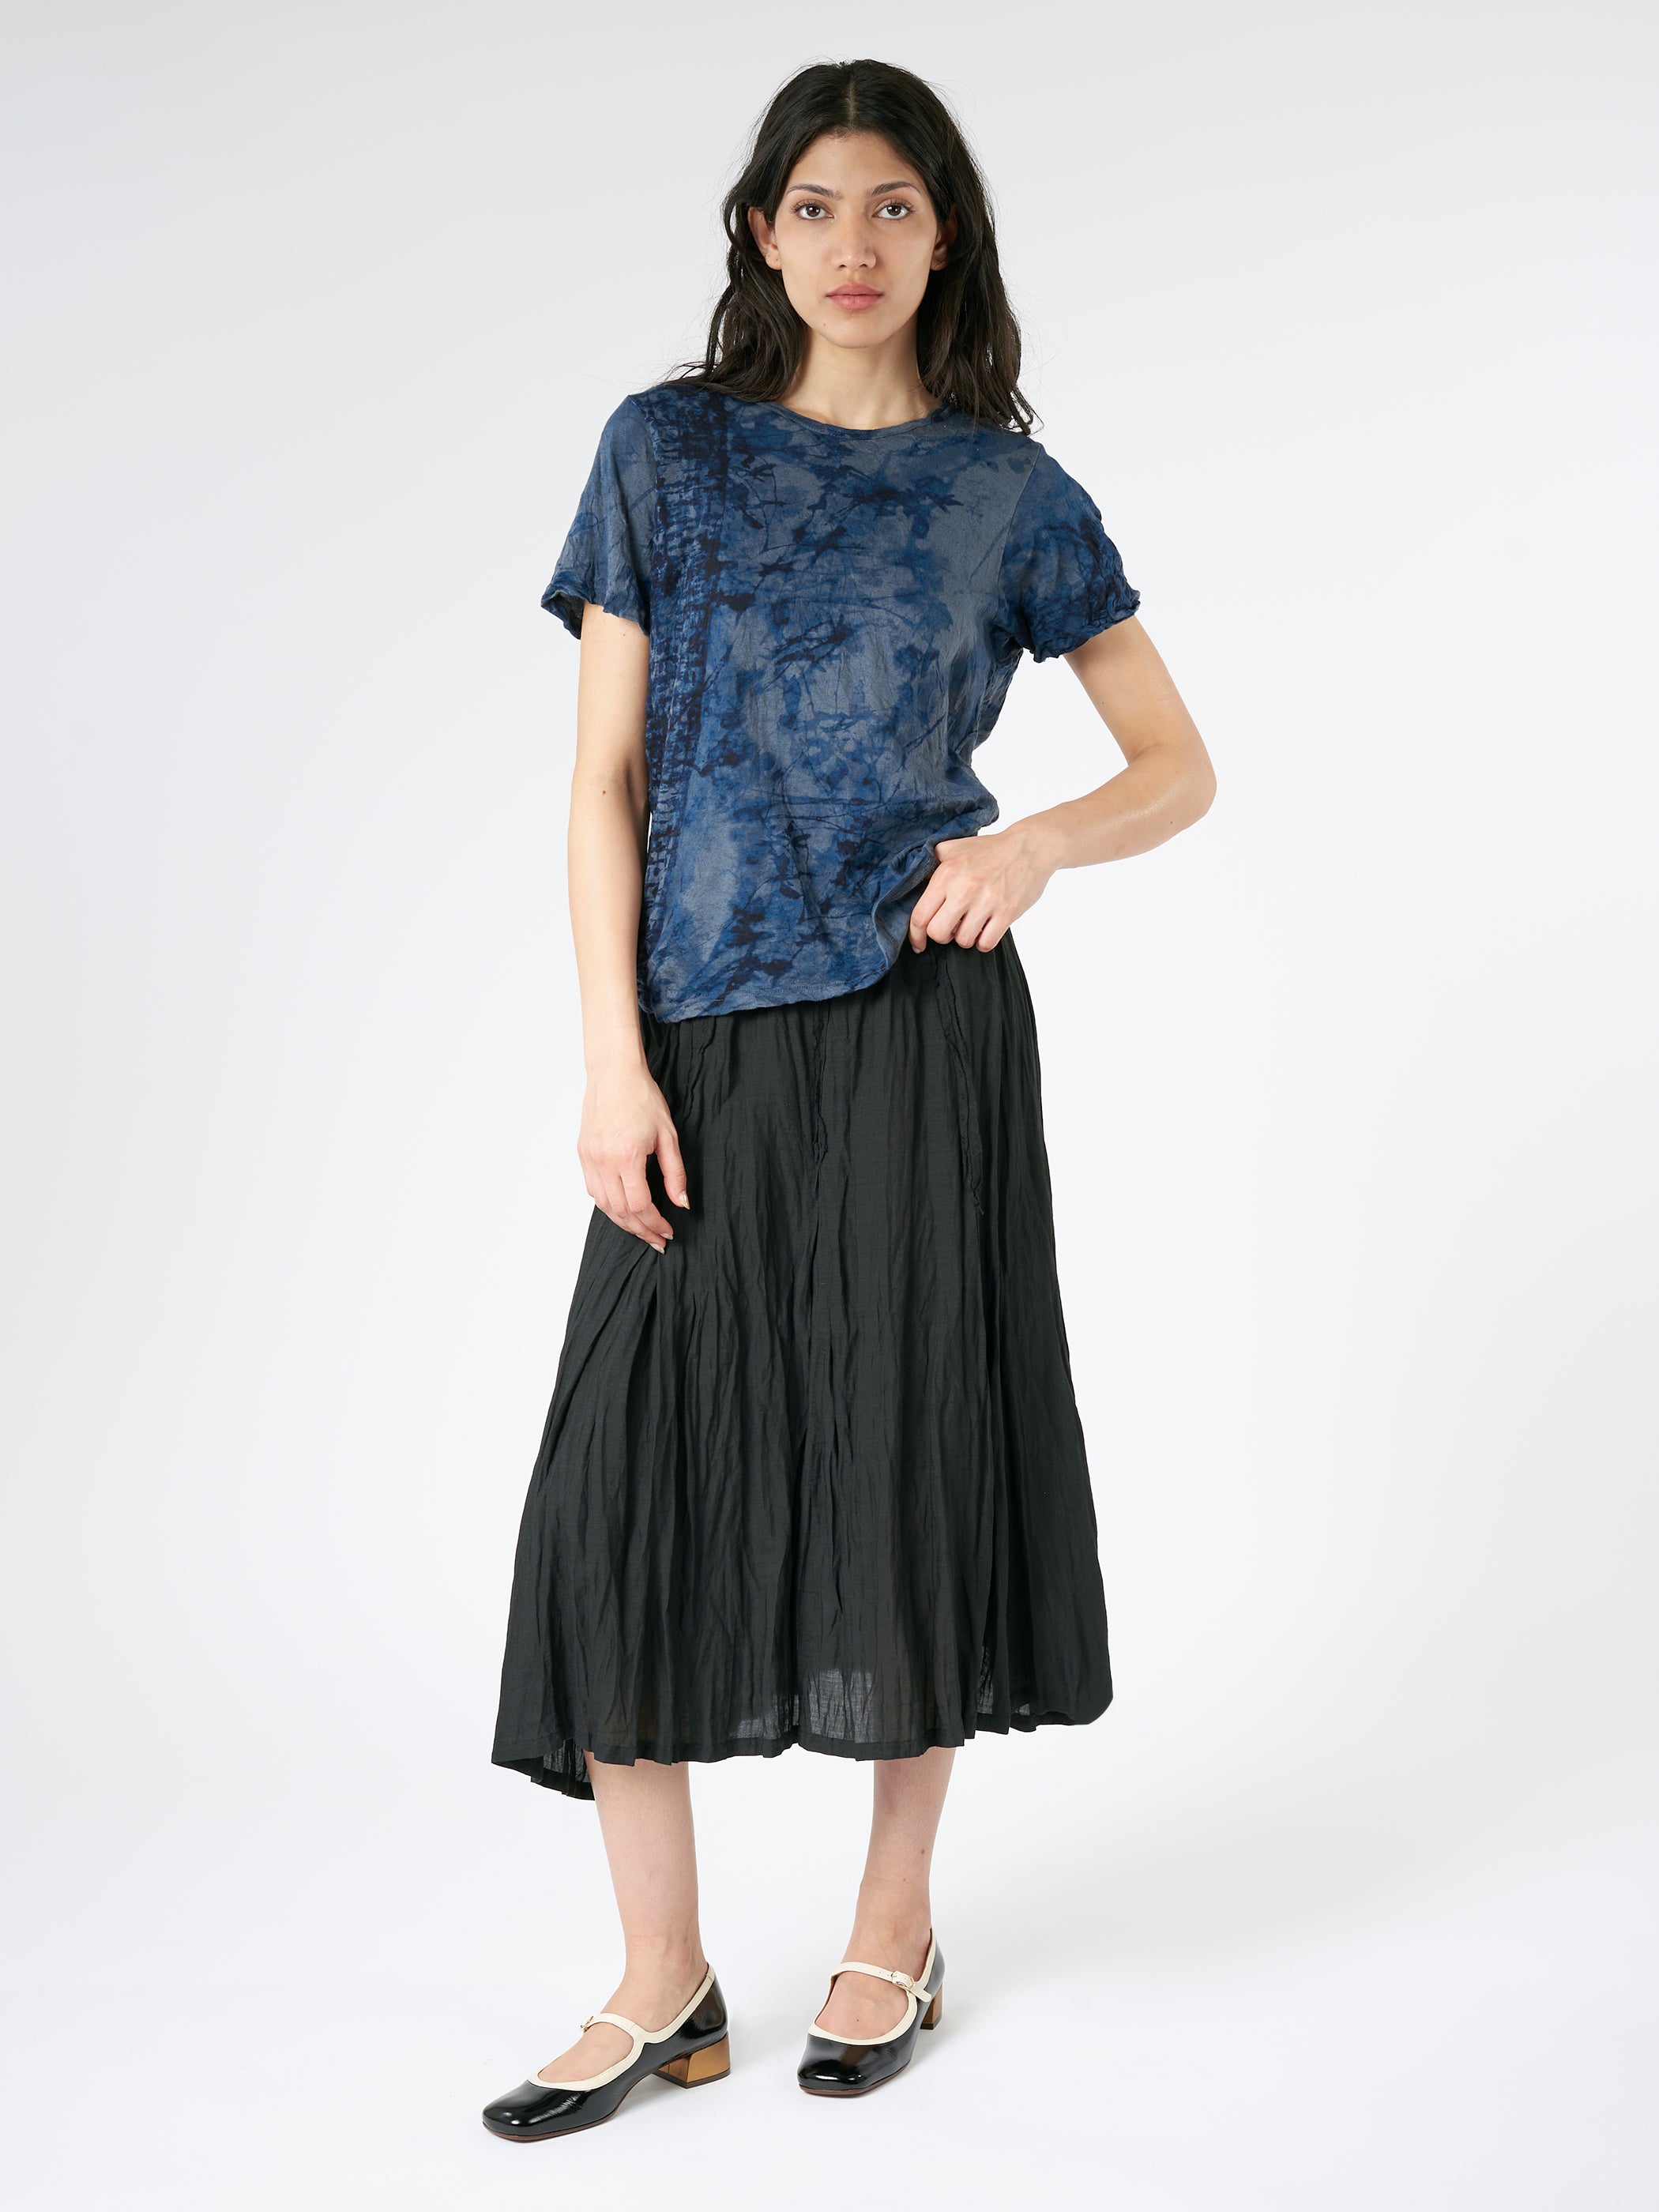 Botanical Garment Dye Skirt